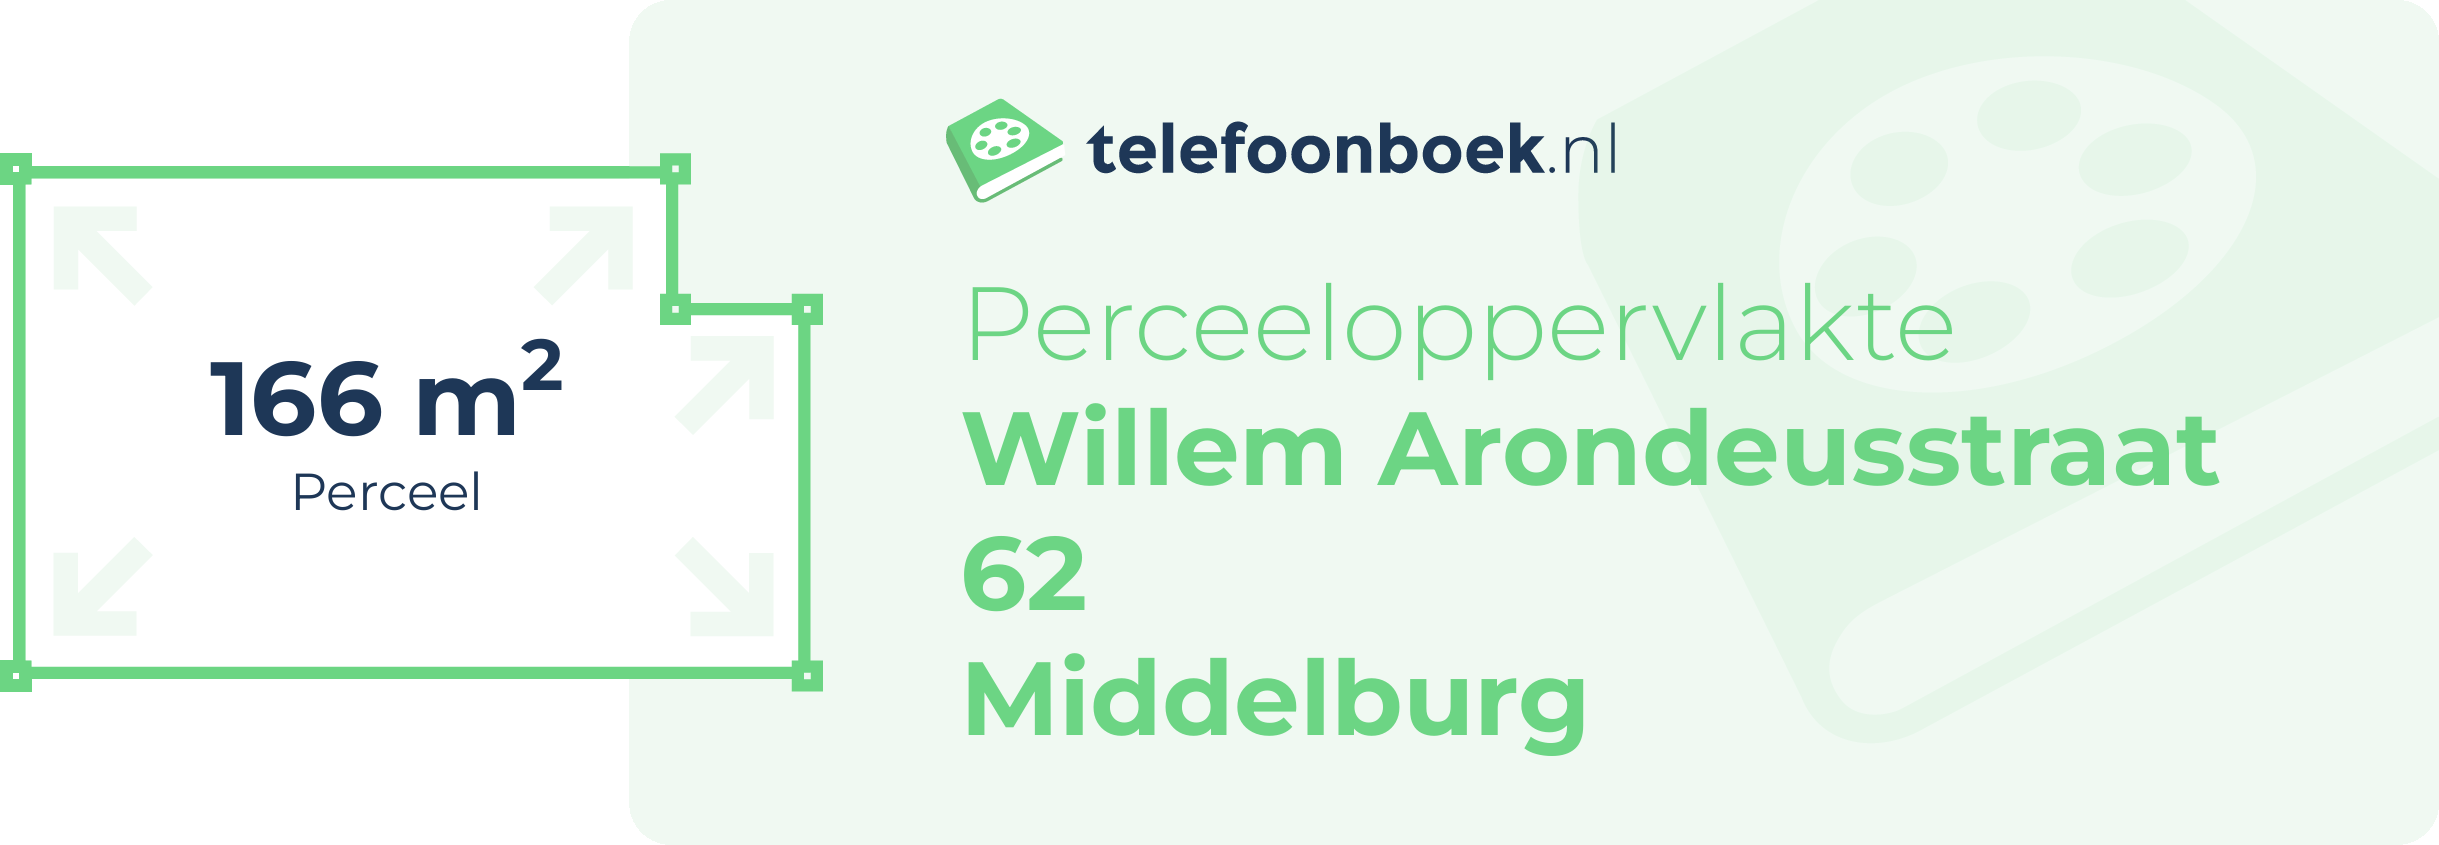 Perceeloppervlakte Willem Arondeusstraat 62 Middelburg